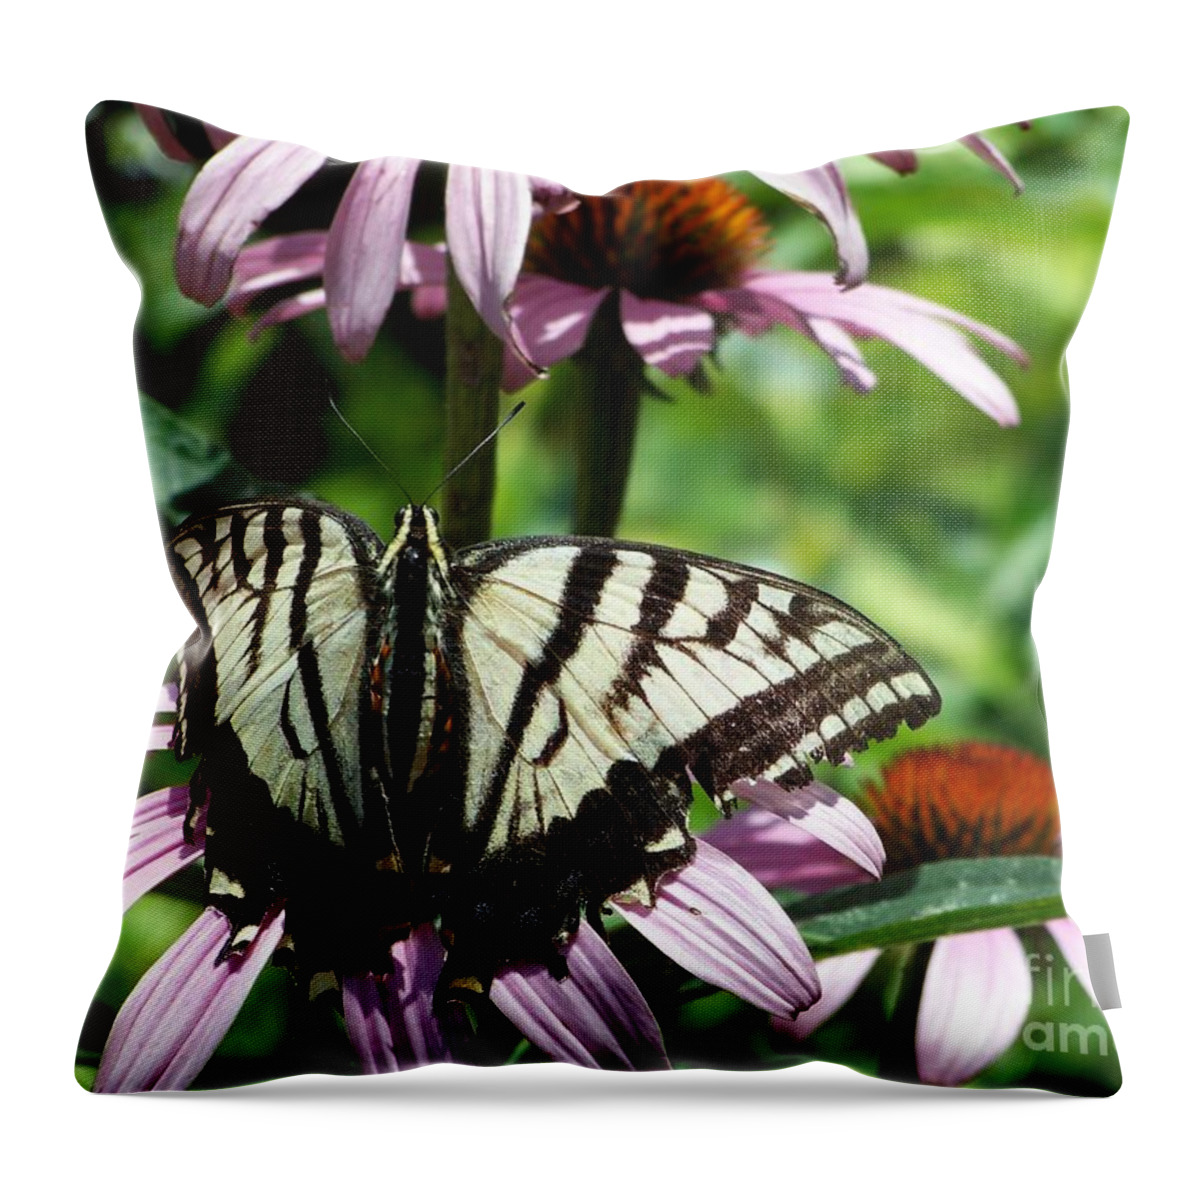 Butterflies Throw Pillow featuring the photograph The Survivor by Dorrene BrownButterfield